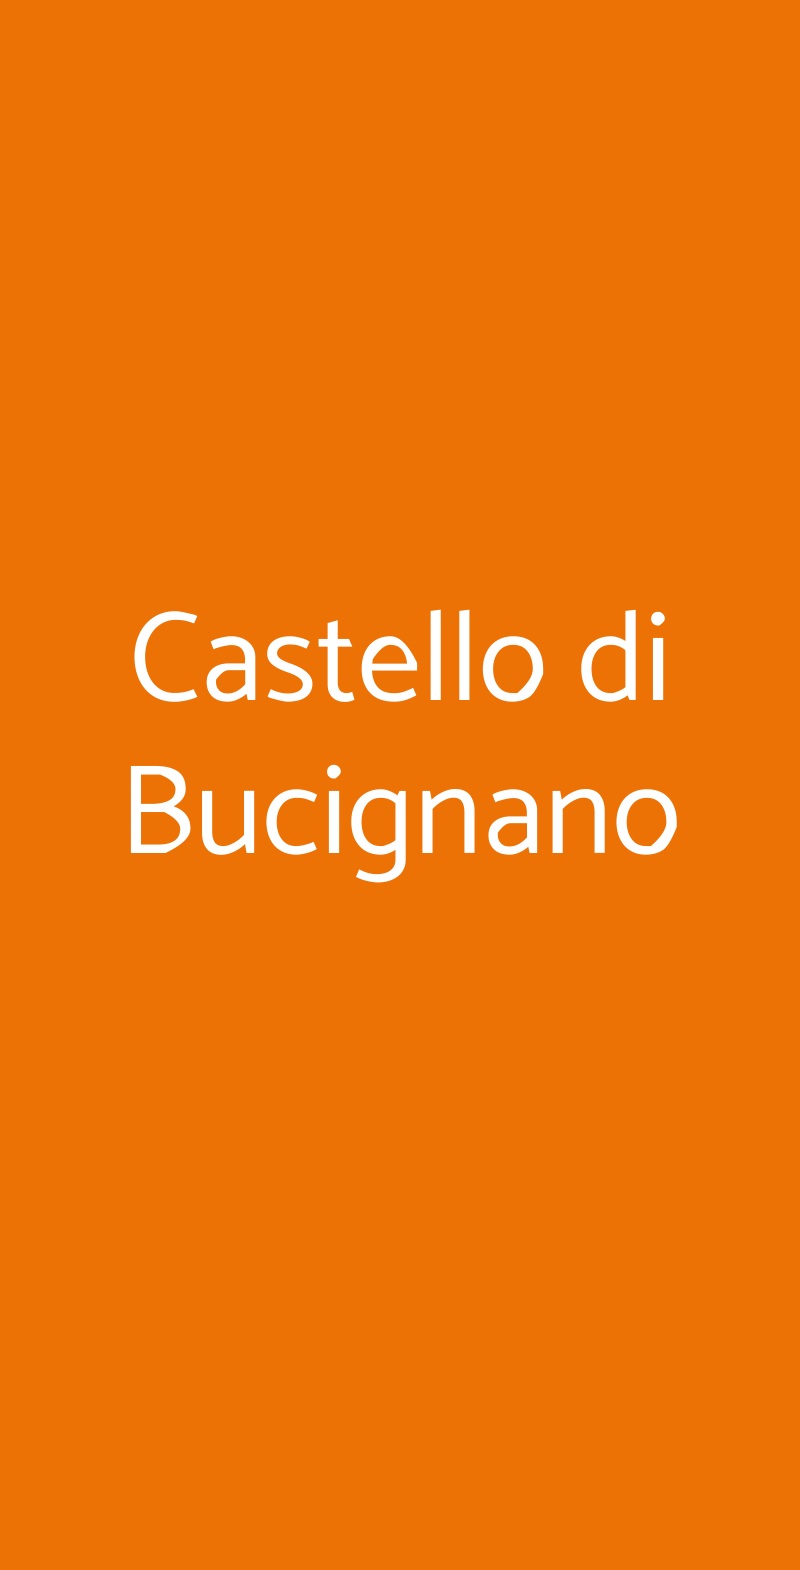 Castello di Bucignano Castelnuovo di Val di Cecina menù 1 pagina